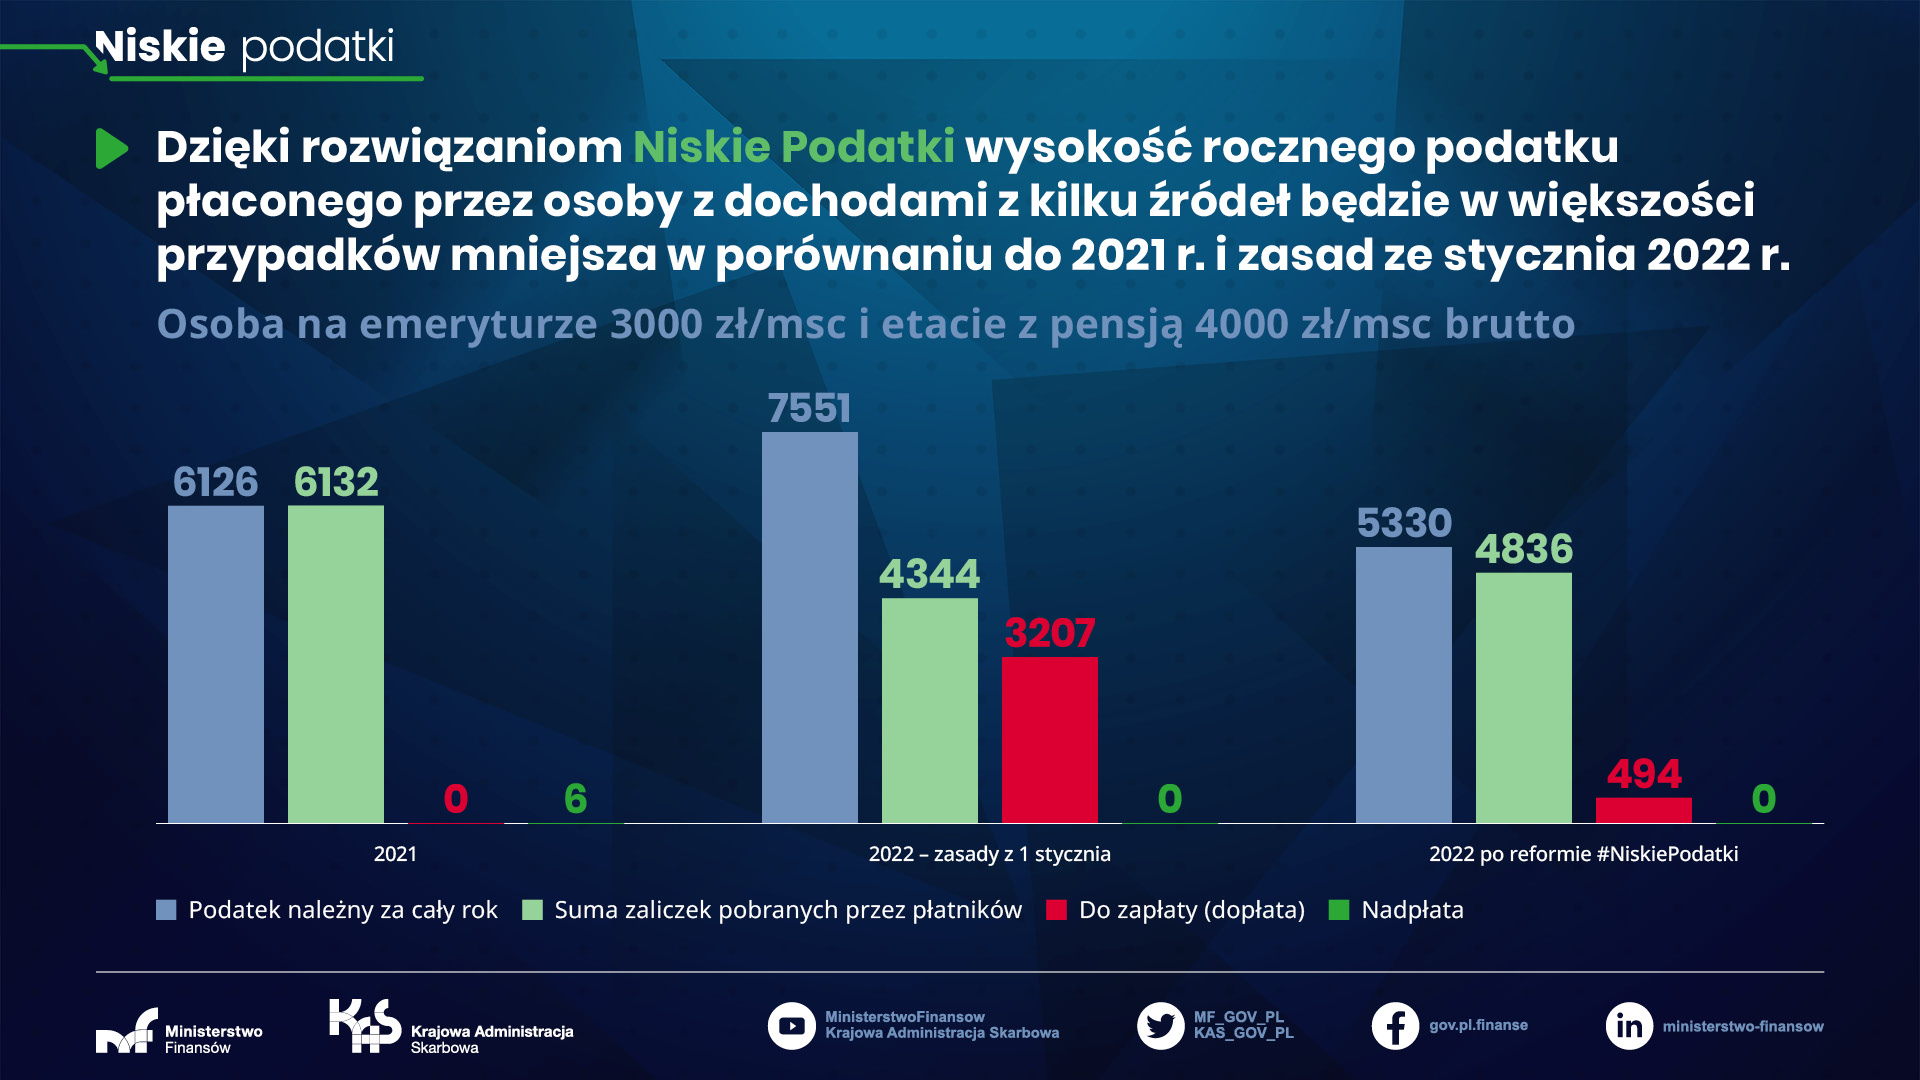 Niskie podatki - osoba na emeryturze 3000 zł/msc i etacie z pensją 4000 zł/msc brutto